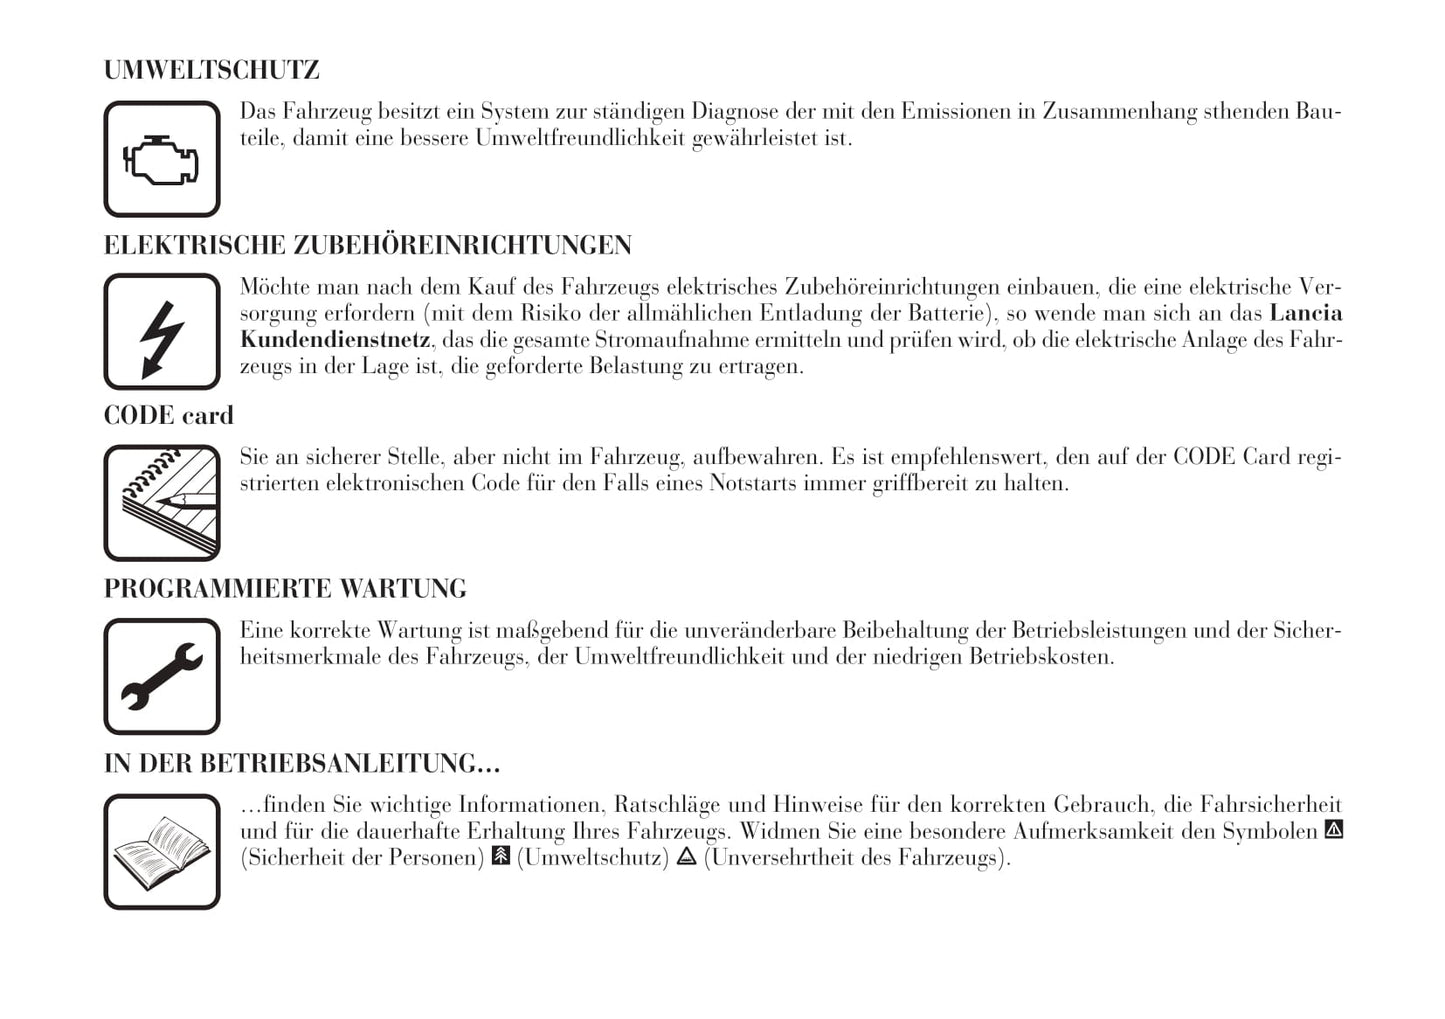 2002-2008 Lanica Phedra Gebruikershandleiding | Duits